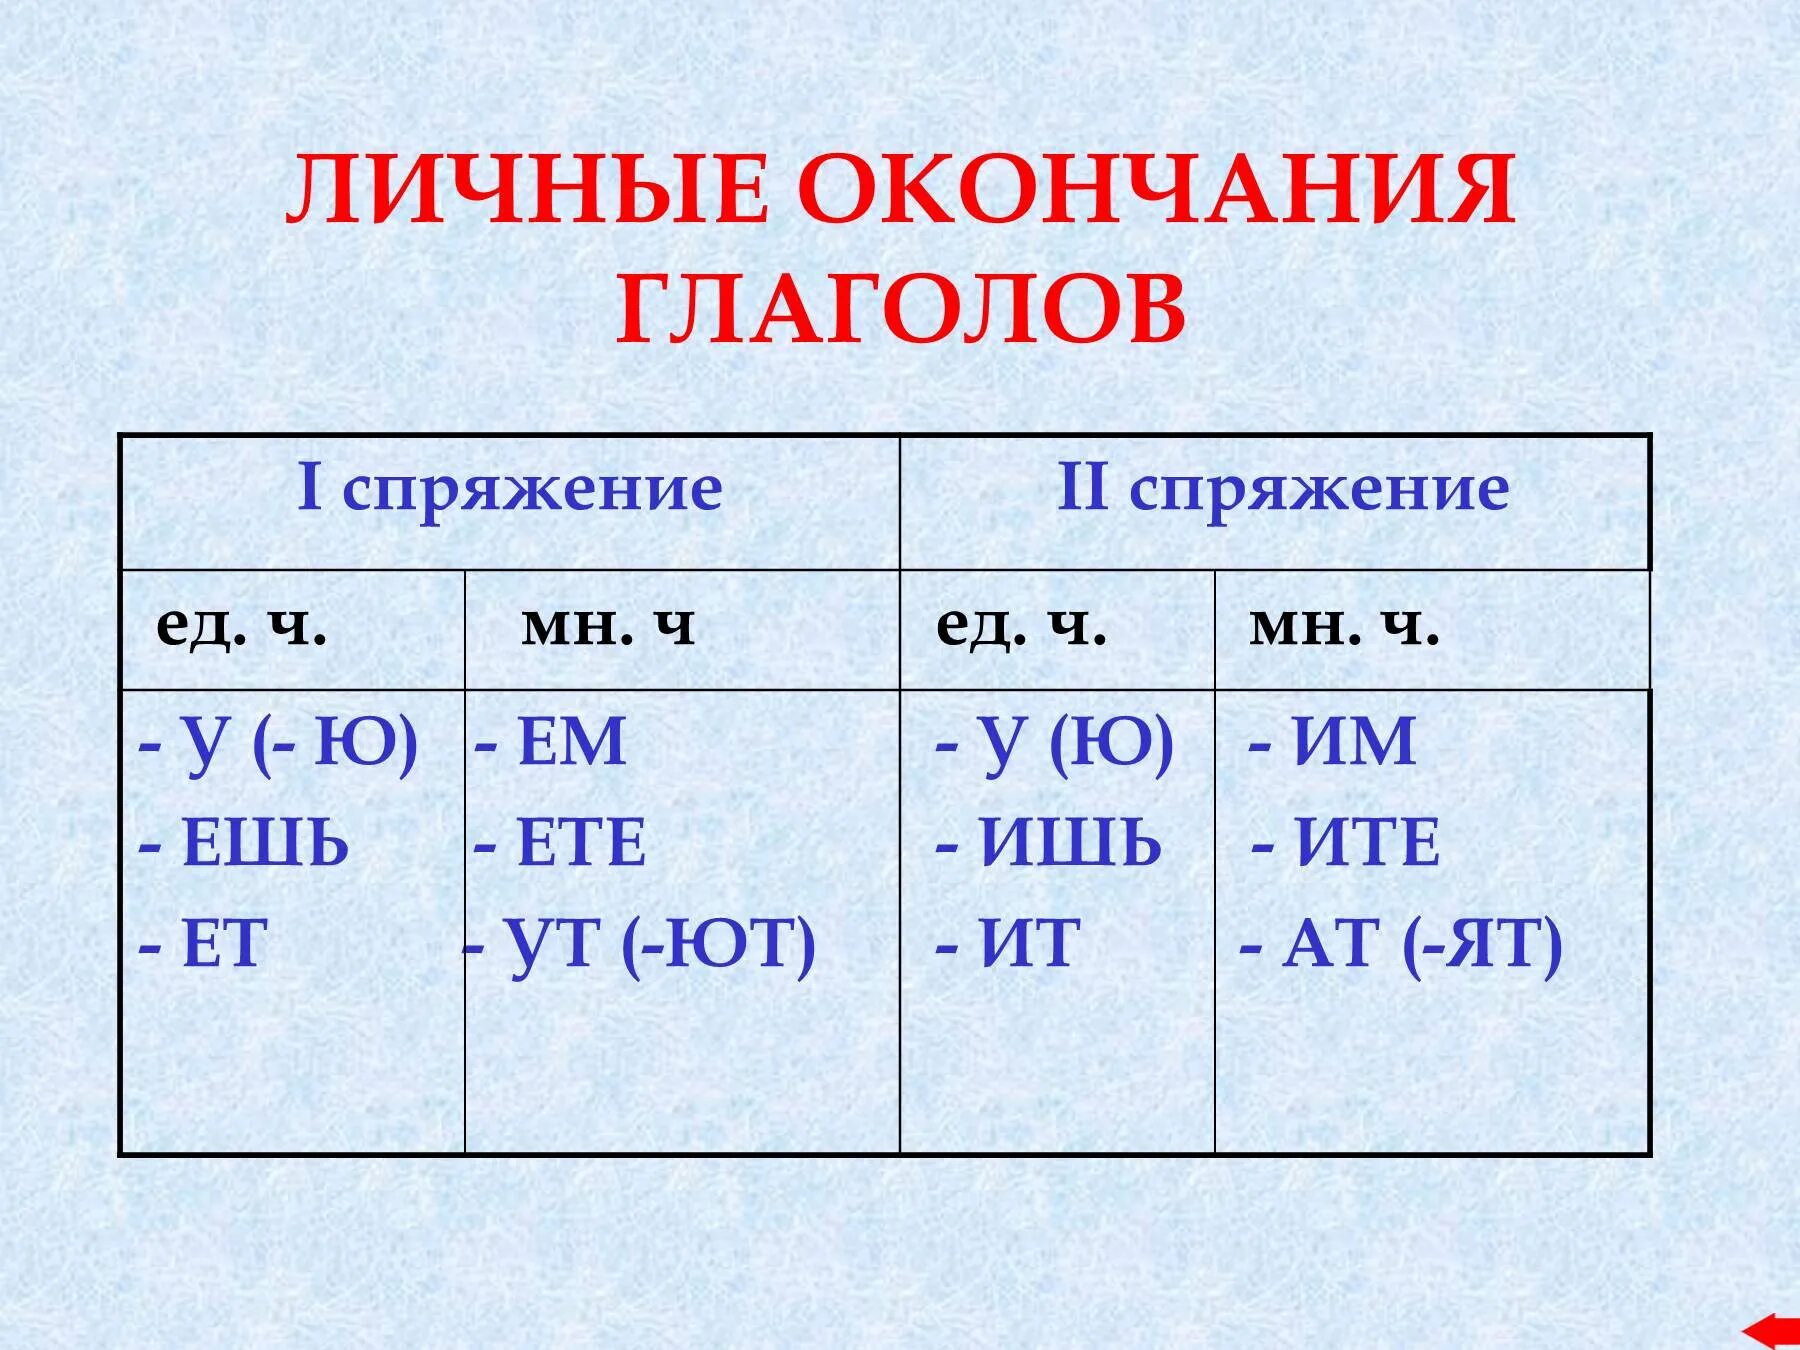 Какие окончания у 1 и 2 спряжения. Личные окончания глаголов 2 спряжения таблица. Спряжение глаголов личные окончания глаголов. Личные окончания глаголов 1 и 2 спряжения примеры. Личные окончания глаголов таблица 5 класс русский язык.